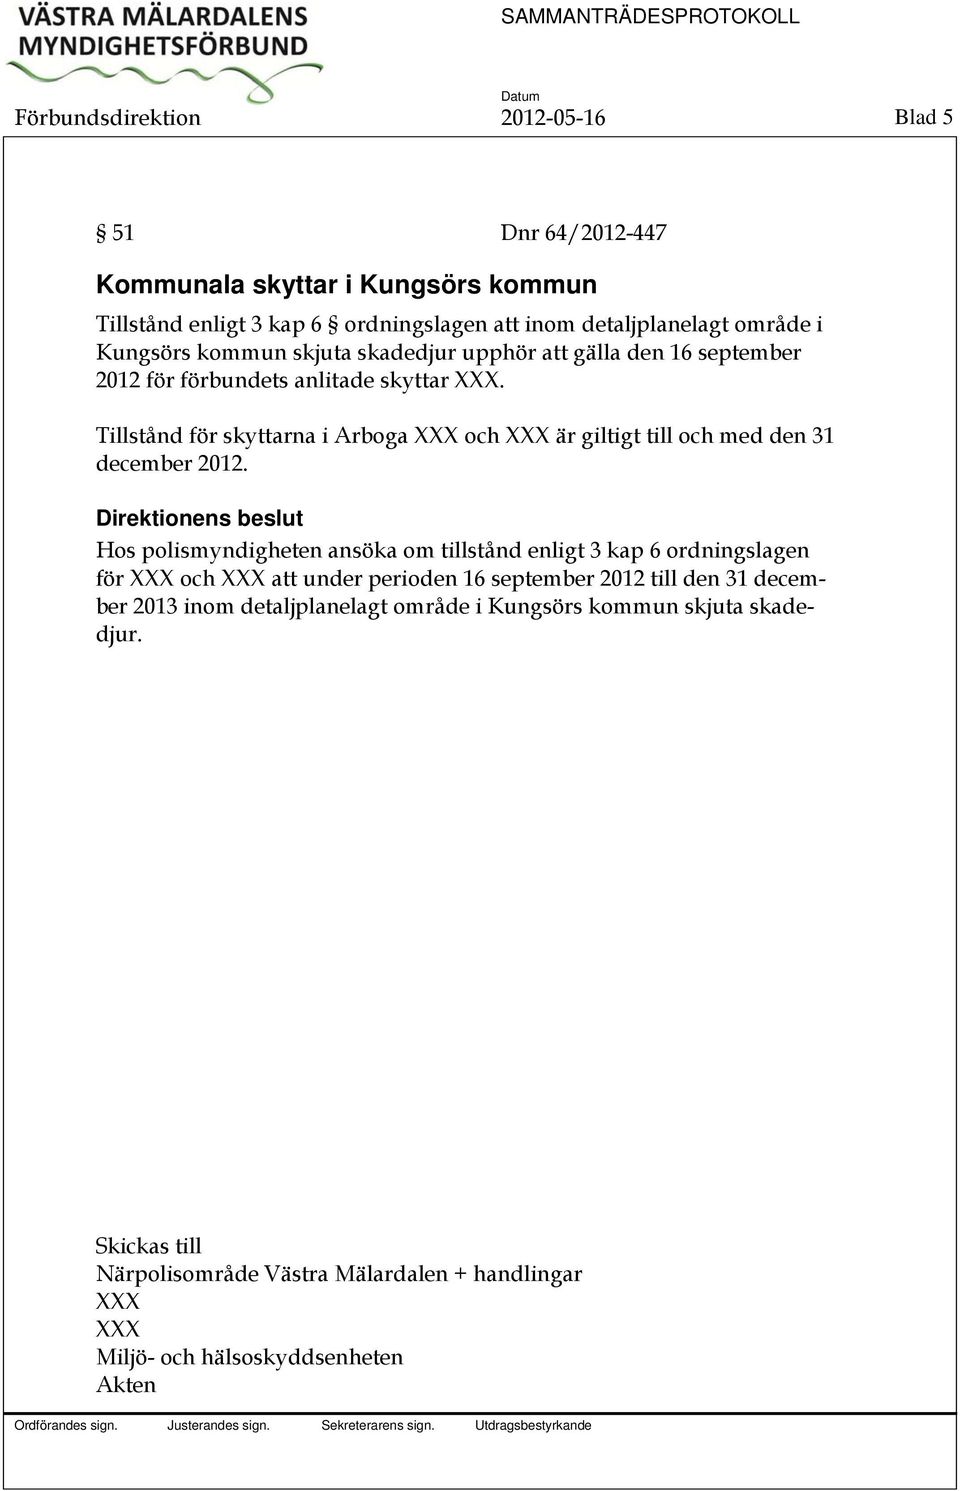 Tillstånd för skyttarna i Arboga XXX och XXX är giltigt till och med den 31 december 2012.